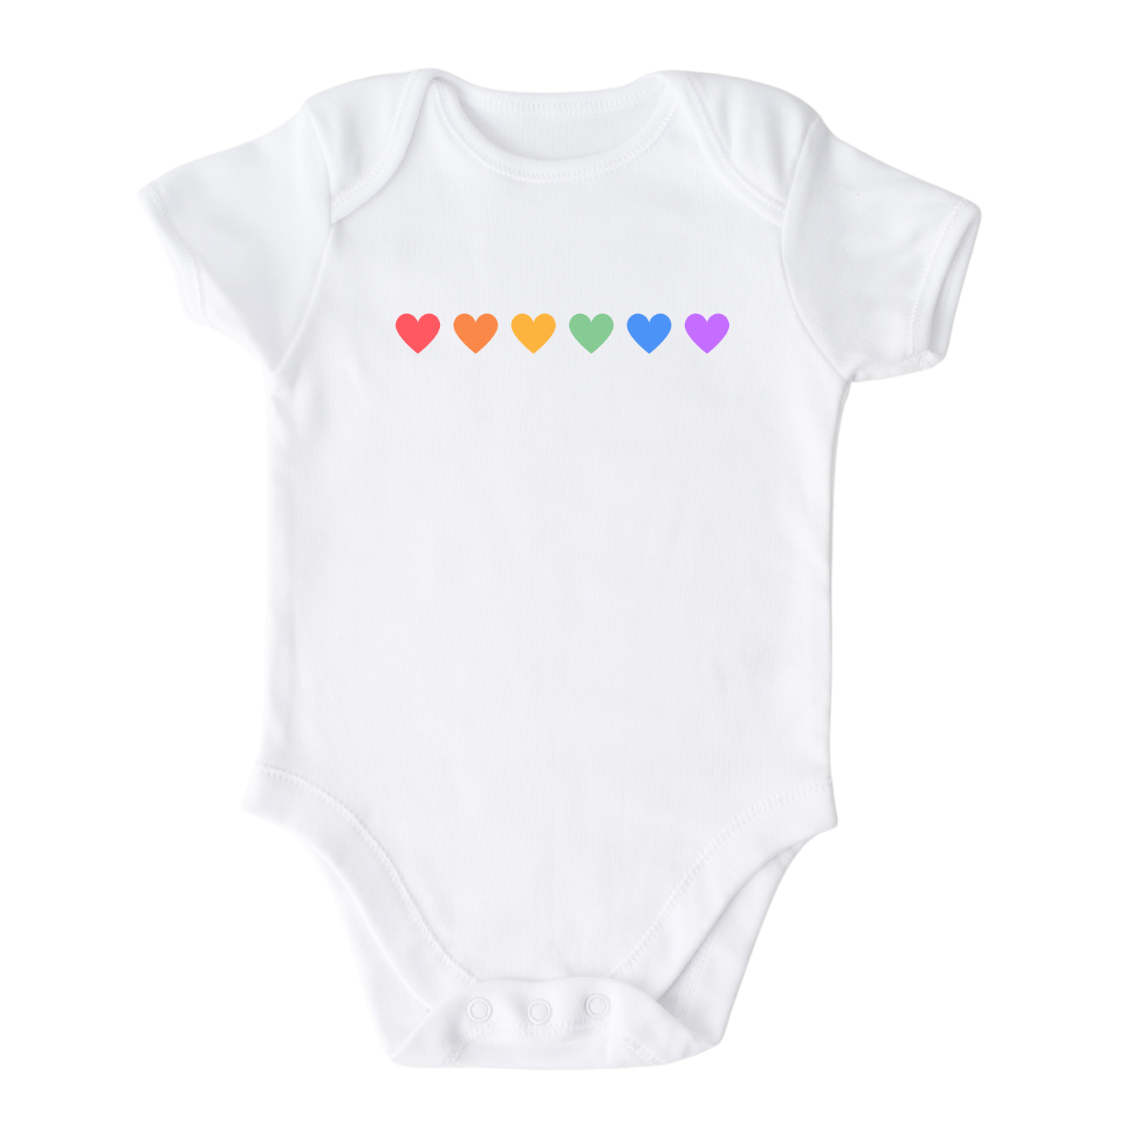 Rainbow Hearts Baby Onesie® Kids Shirt